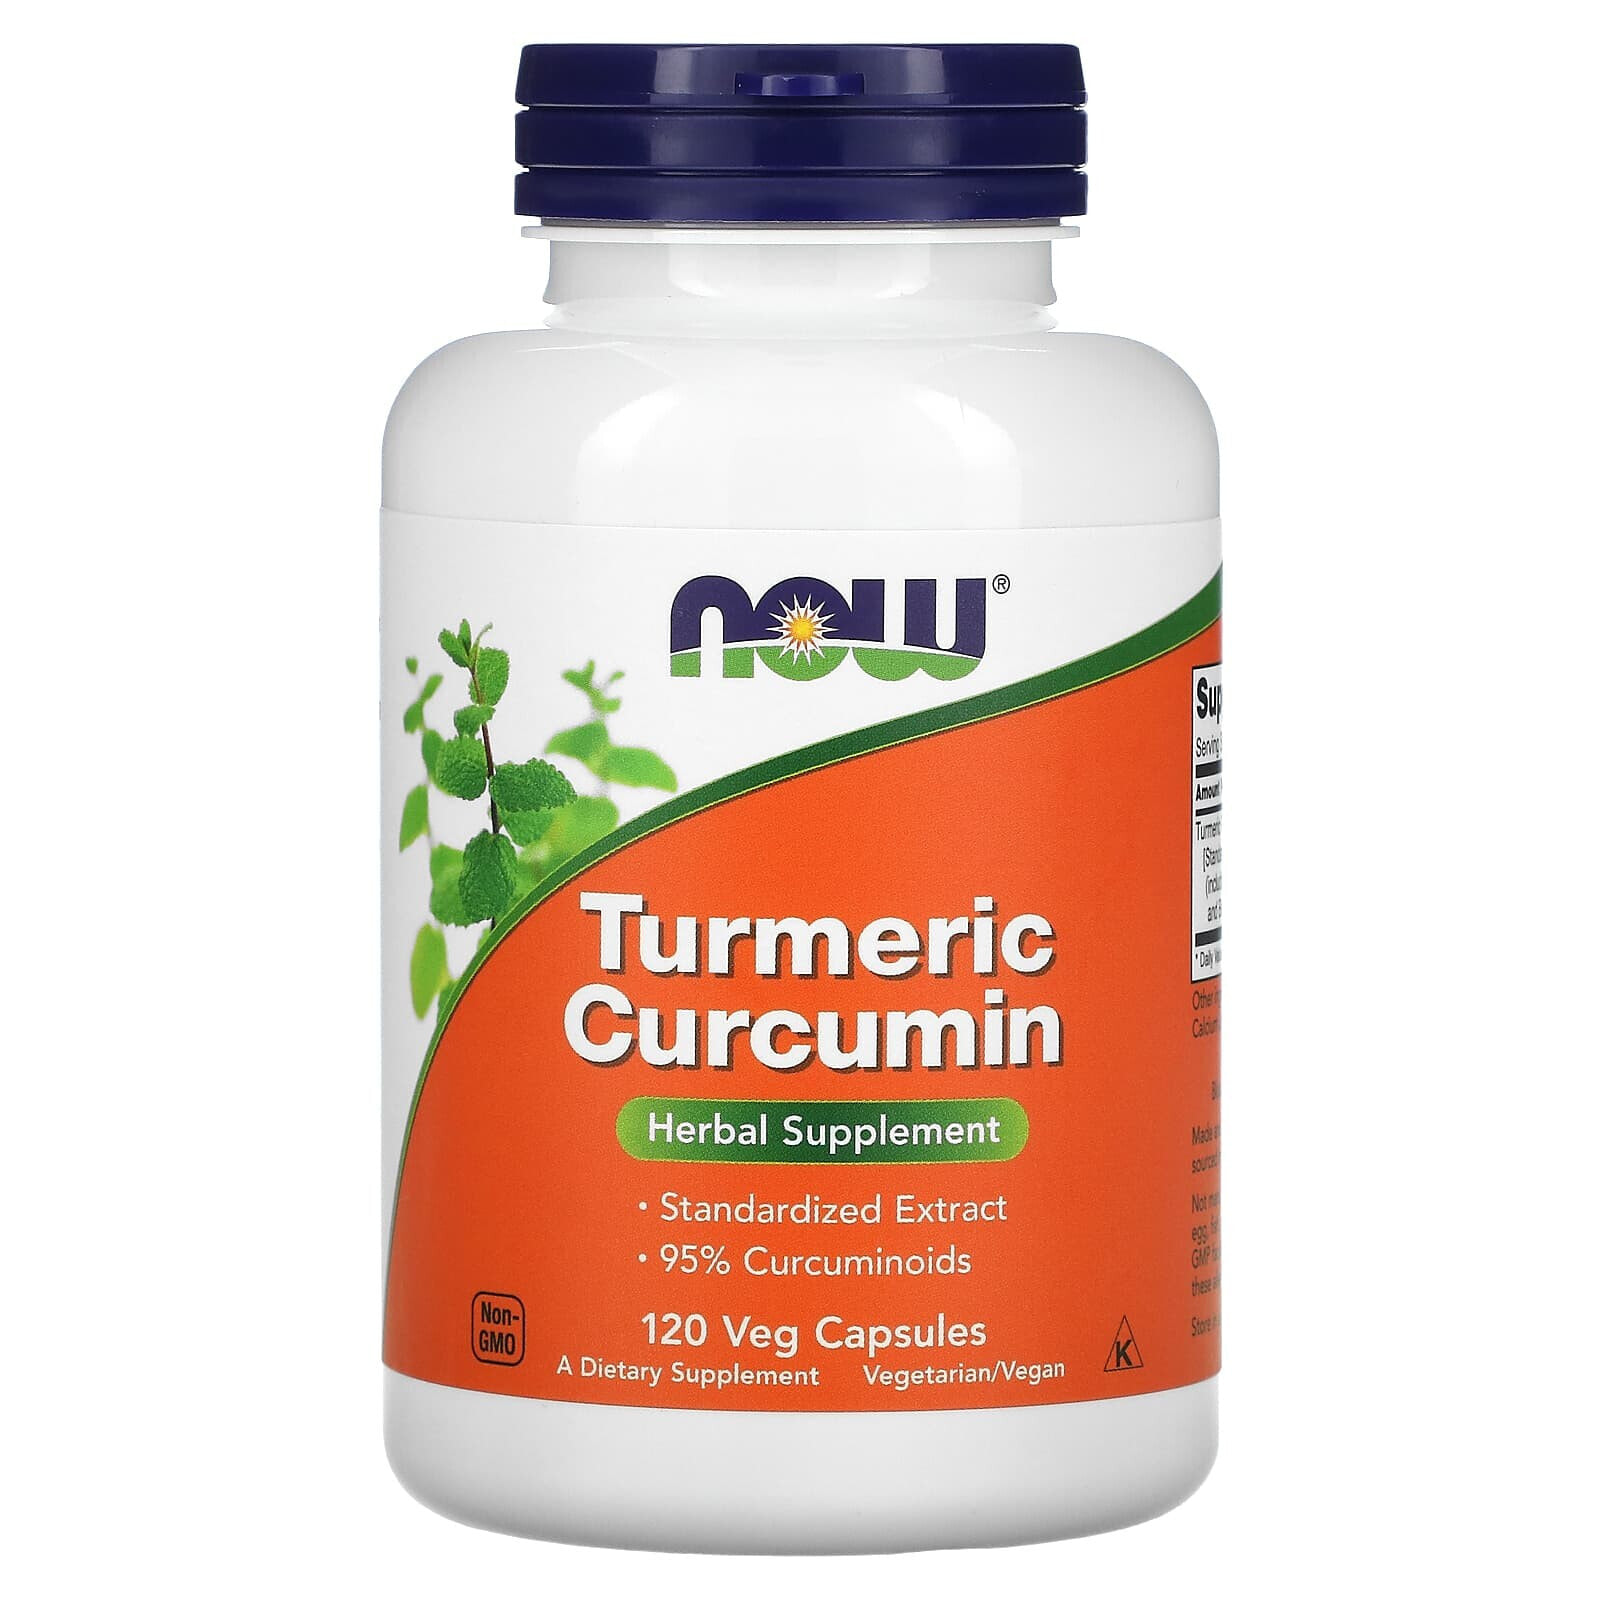 Turmeric Curcumin, 120 Veg Capsules